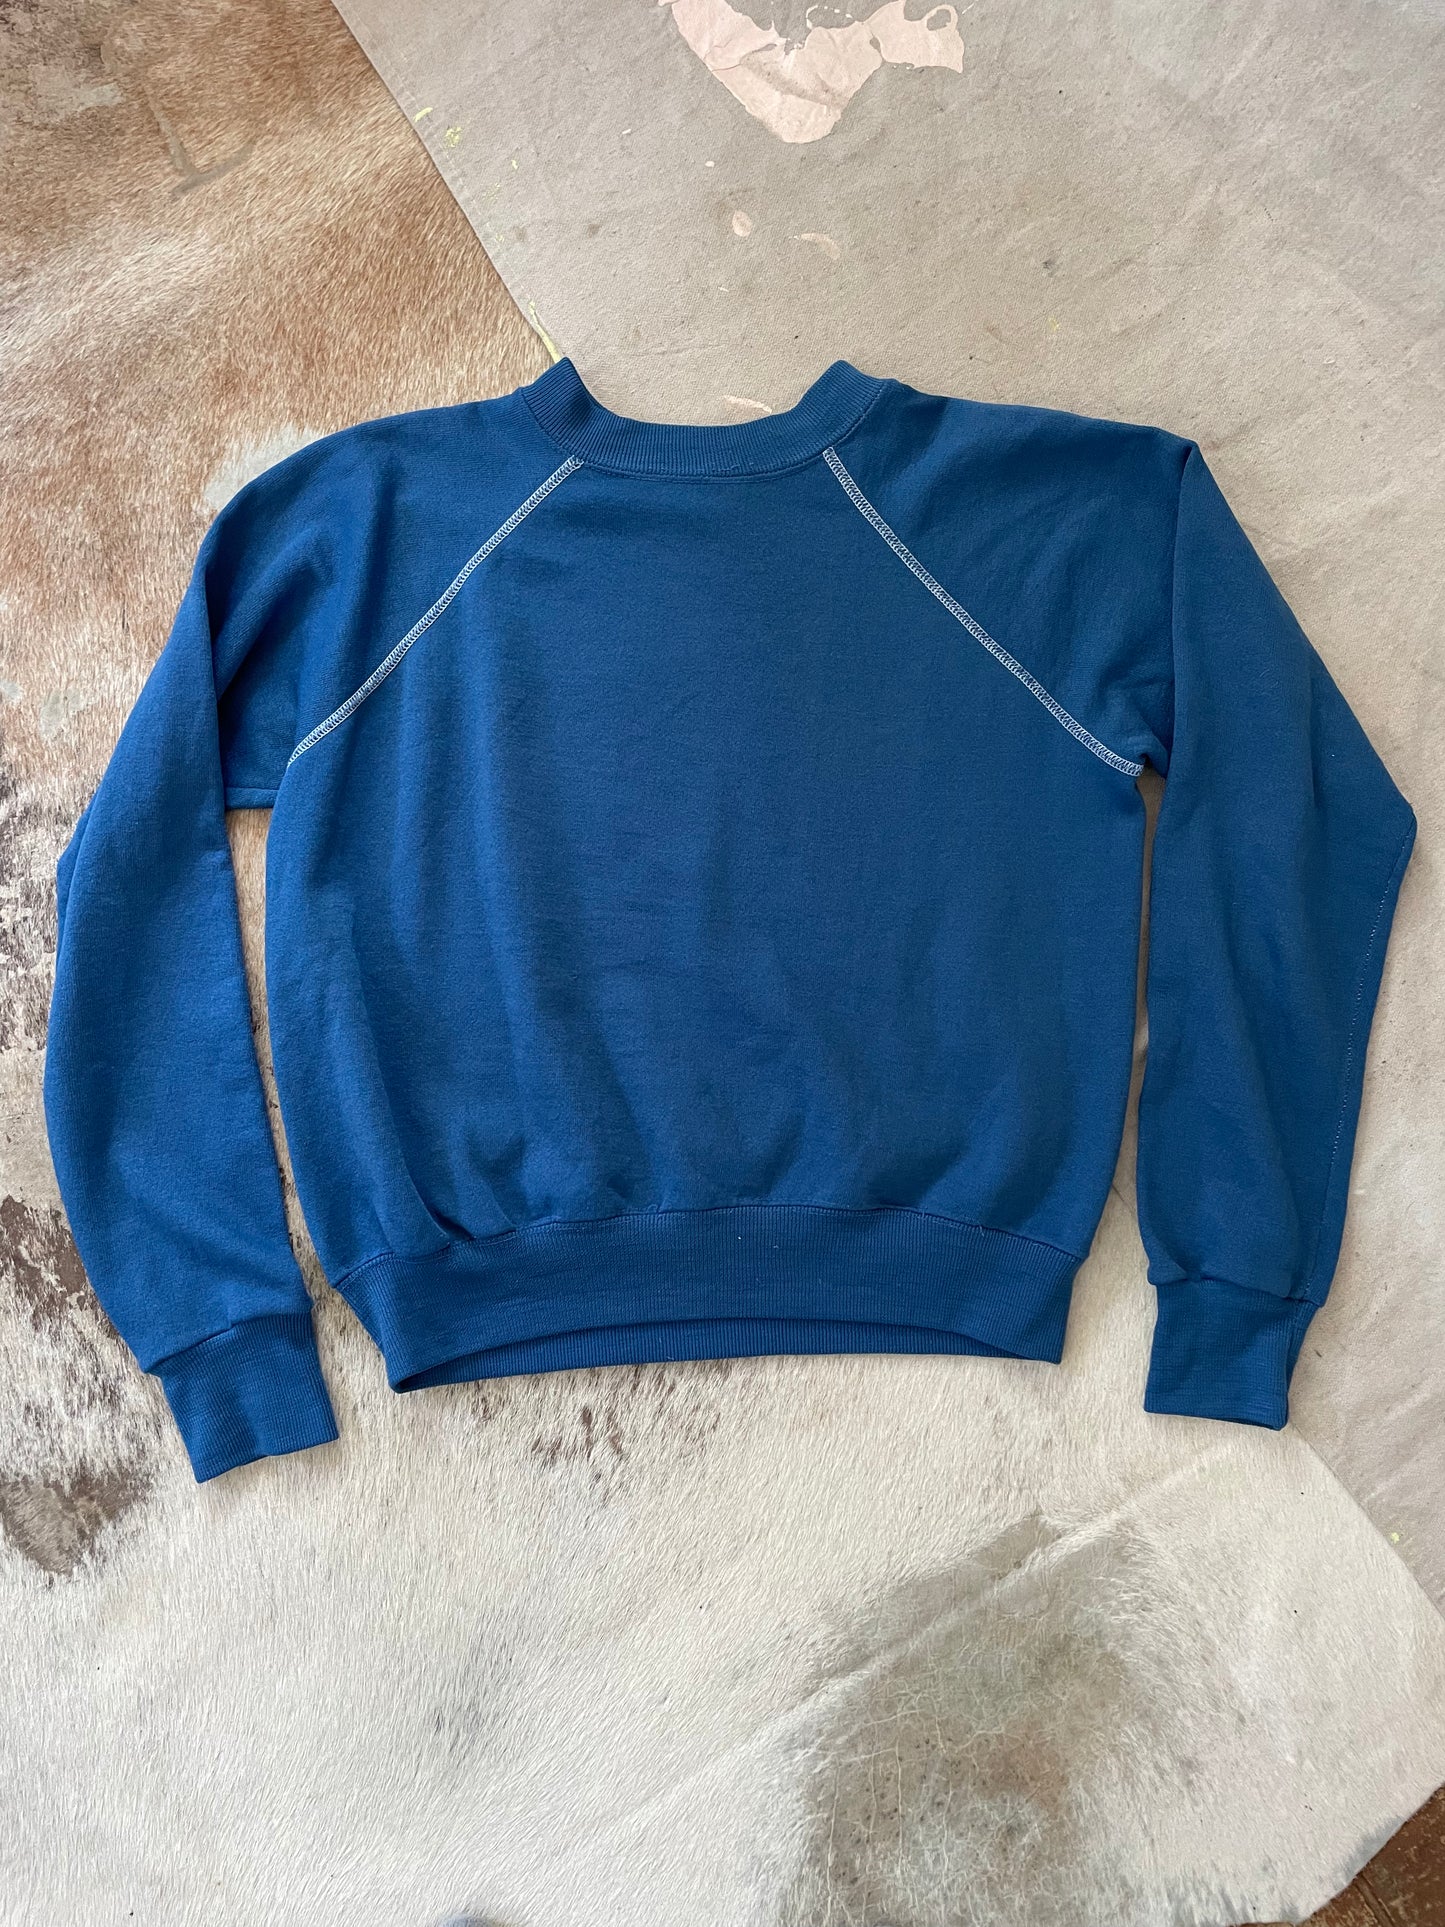 70s Blank Cerulean Blue Sweatshirt